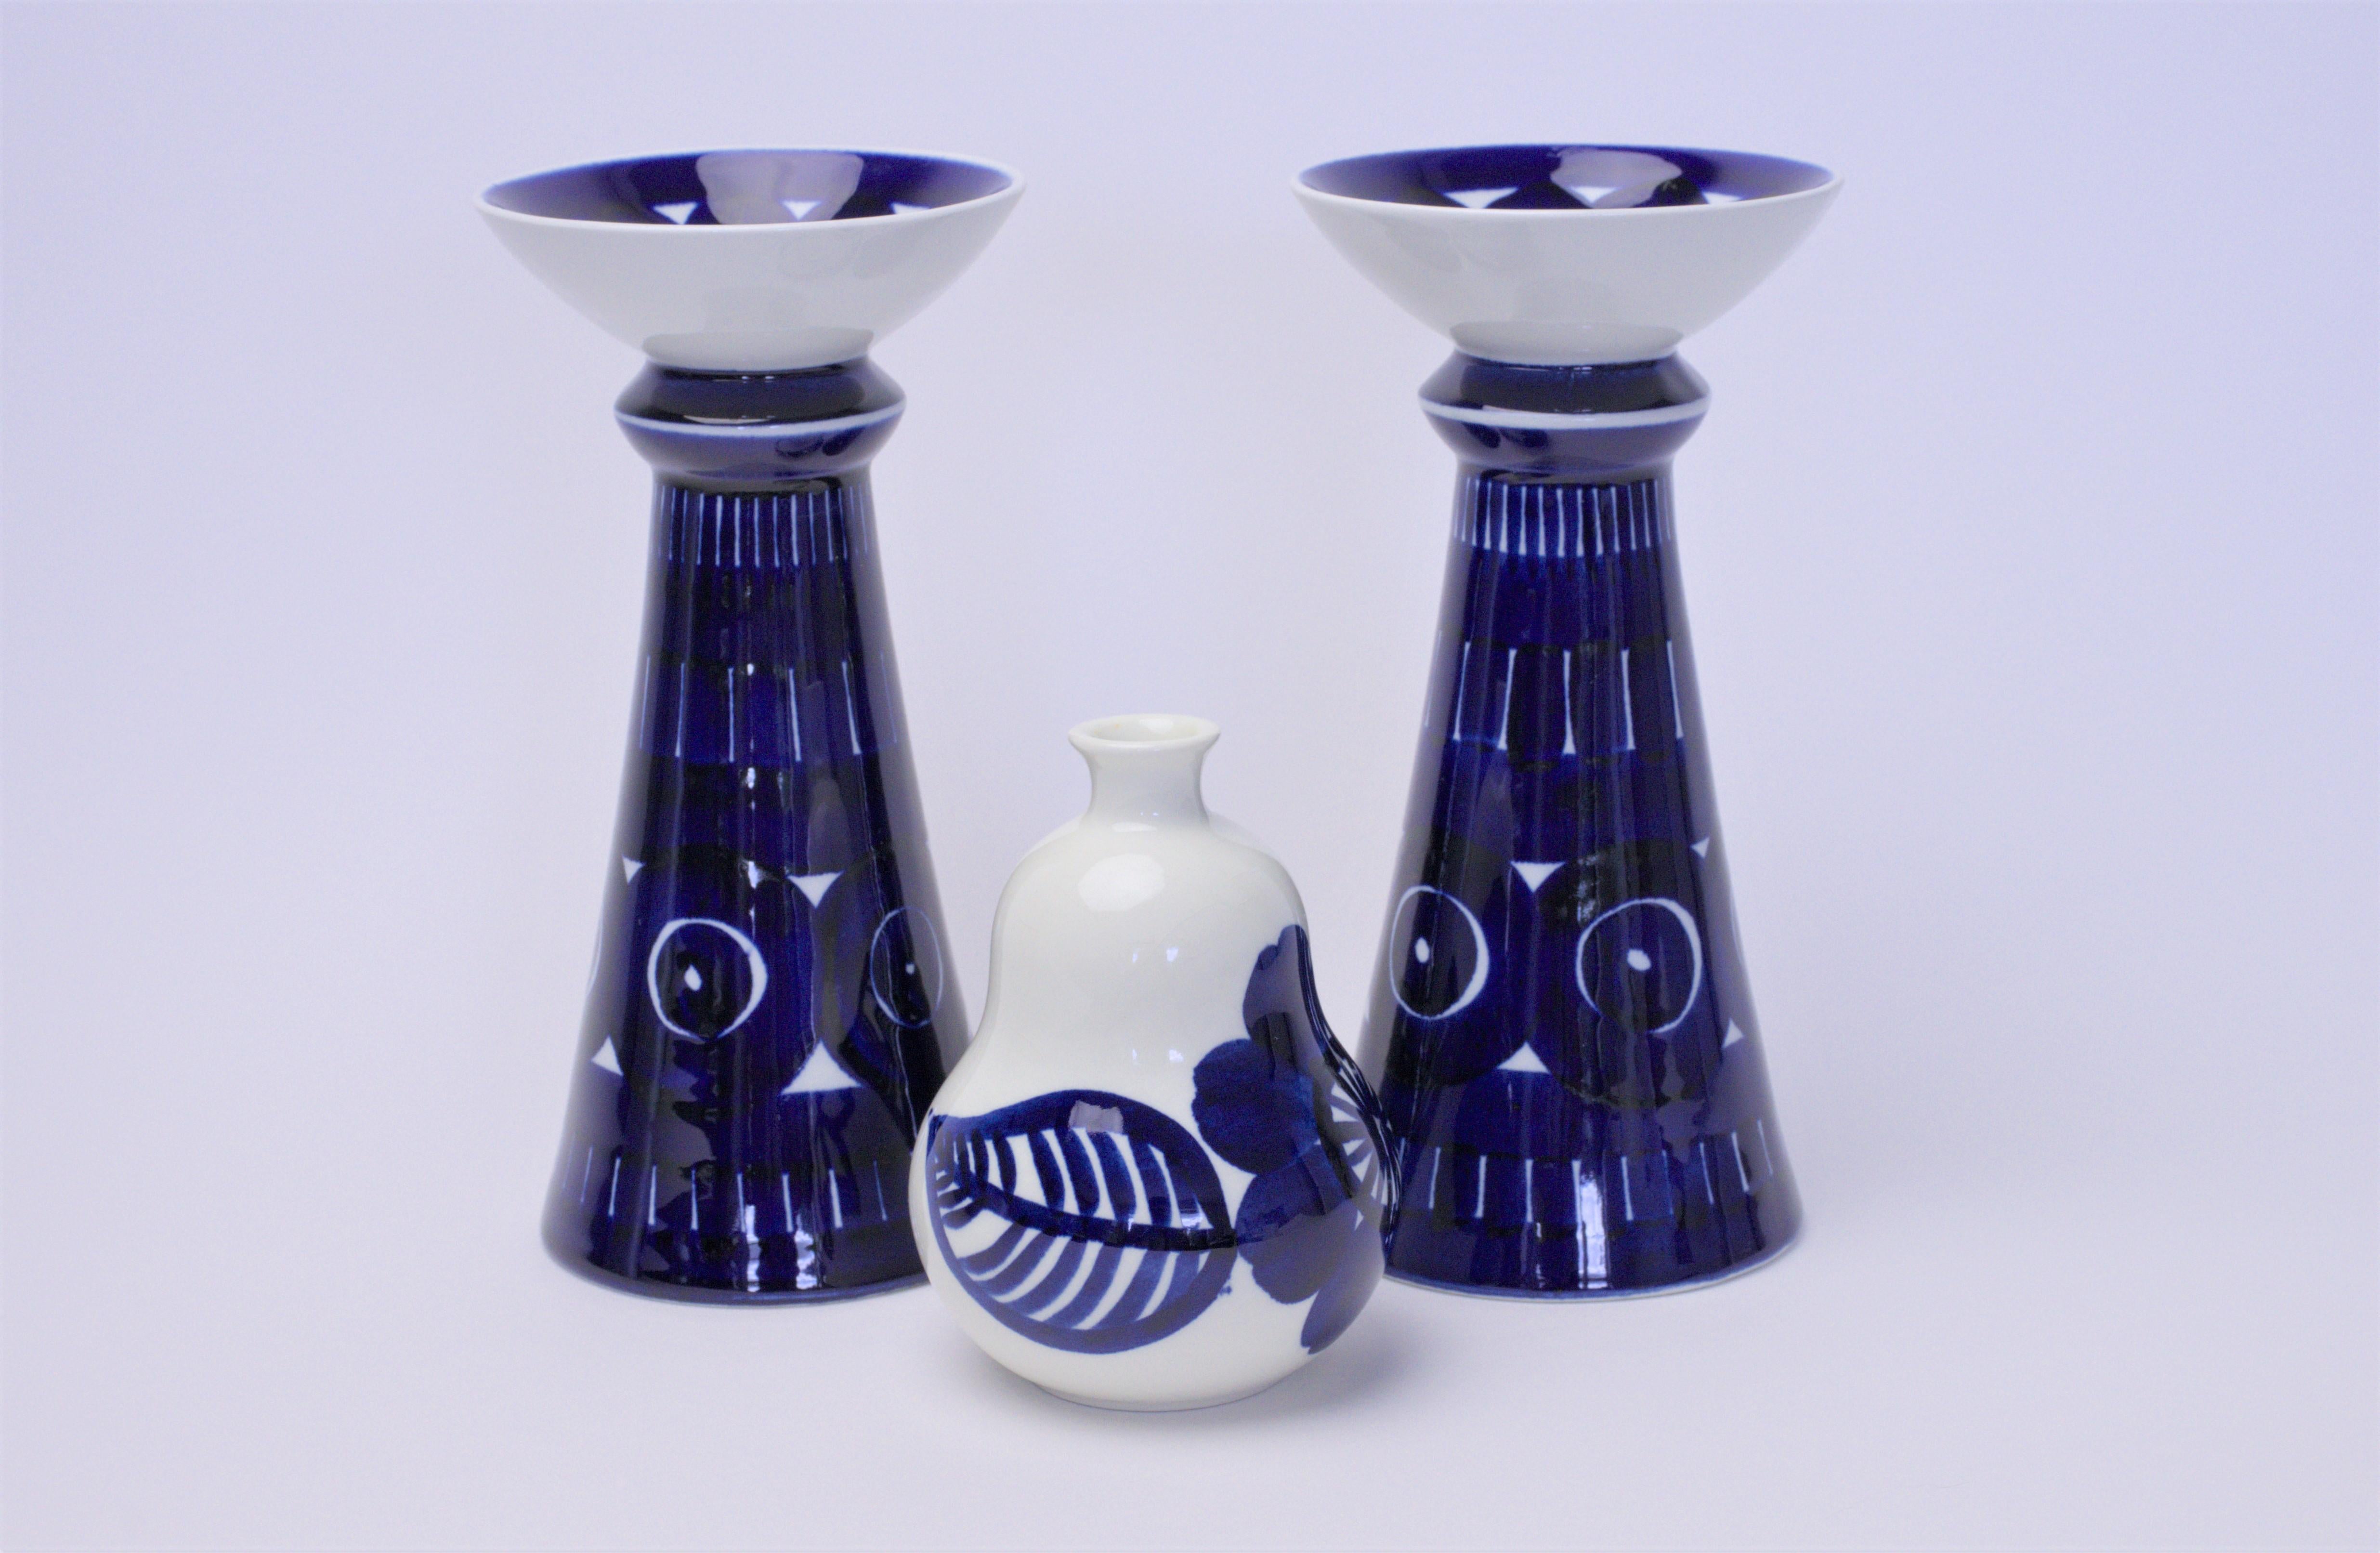 Beschreibung des Produkts:
Wir bieten hier zwei von Ulla Procope entworfene Kerzenhalter und eine von Gunvor Olin-Grönqvist für Arabia Finland entworfene Vase an. Die Vase ist Teil der Köökki - Serie, die aus weiteren Artikeln wie Schneidebrettern